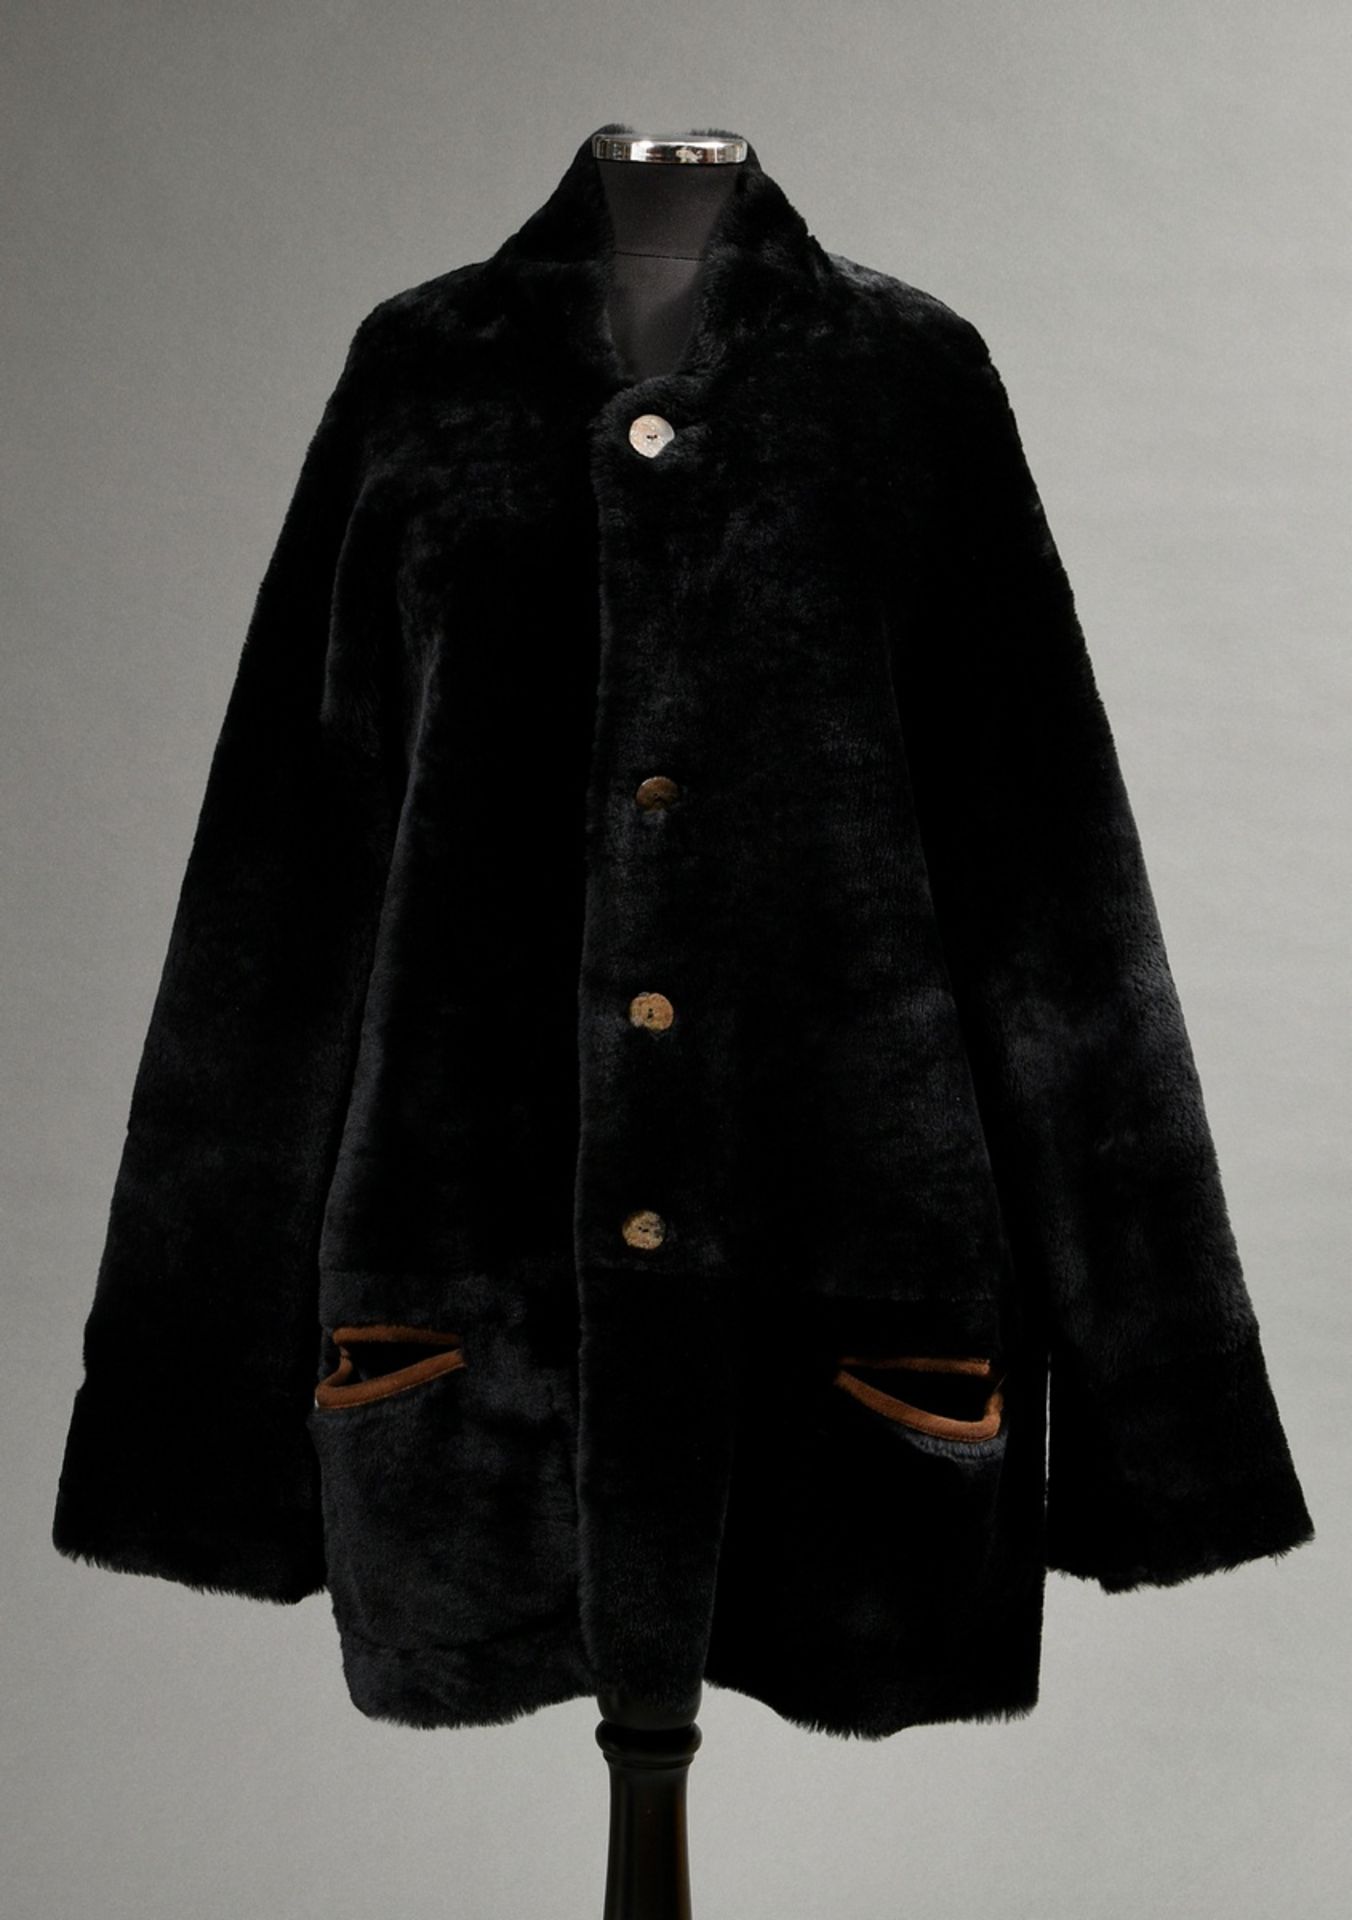 Gerade geschnittene Shearling Wendejacke mit beidseitigen Taschen und Knöpfen, Lammfell schwarz gef - Bild 4 aus 7